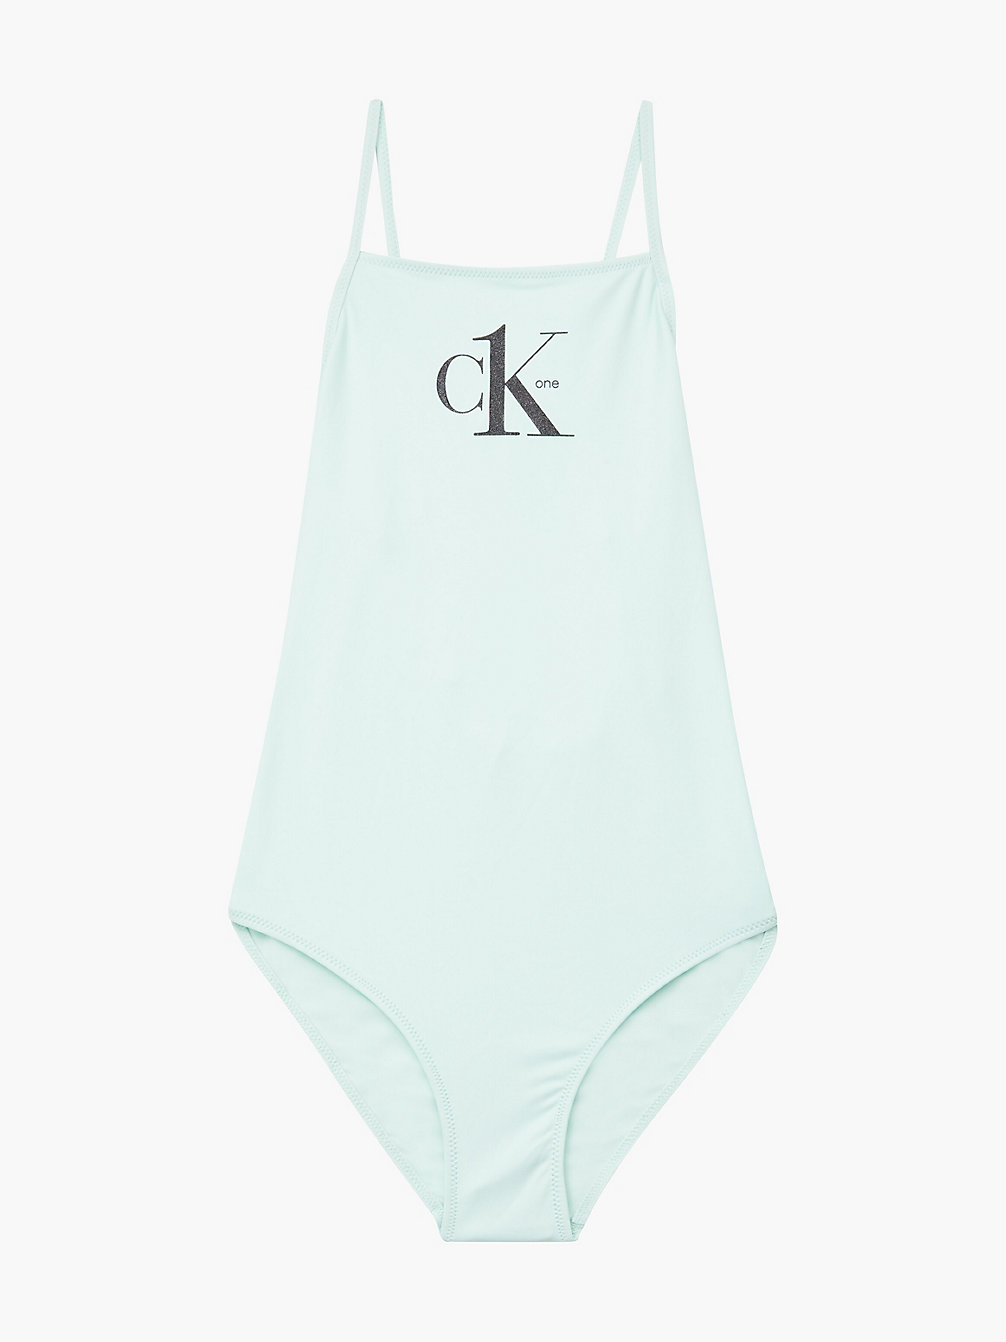 CLEAR SEAFOAM Girls Swimsuit - Y2ck One undefined girls Calvin Klein